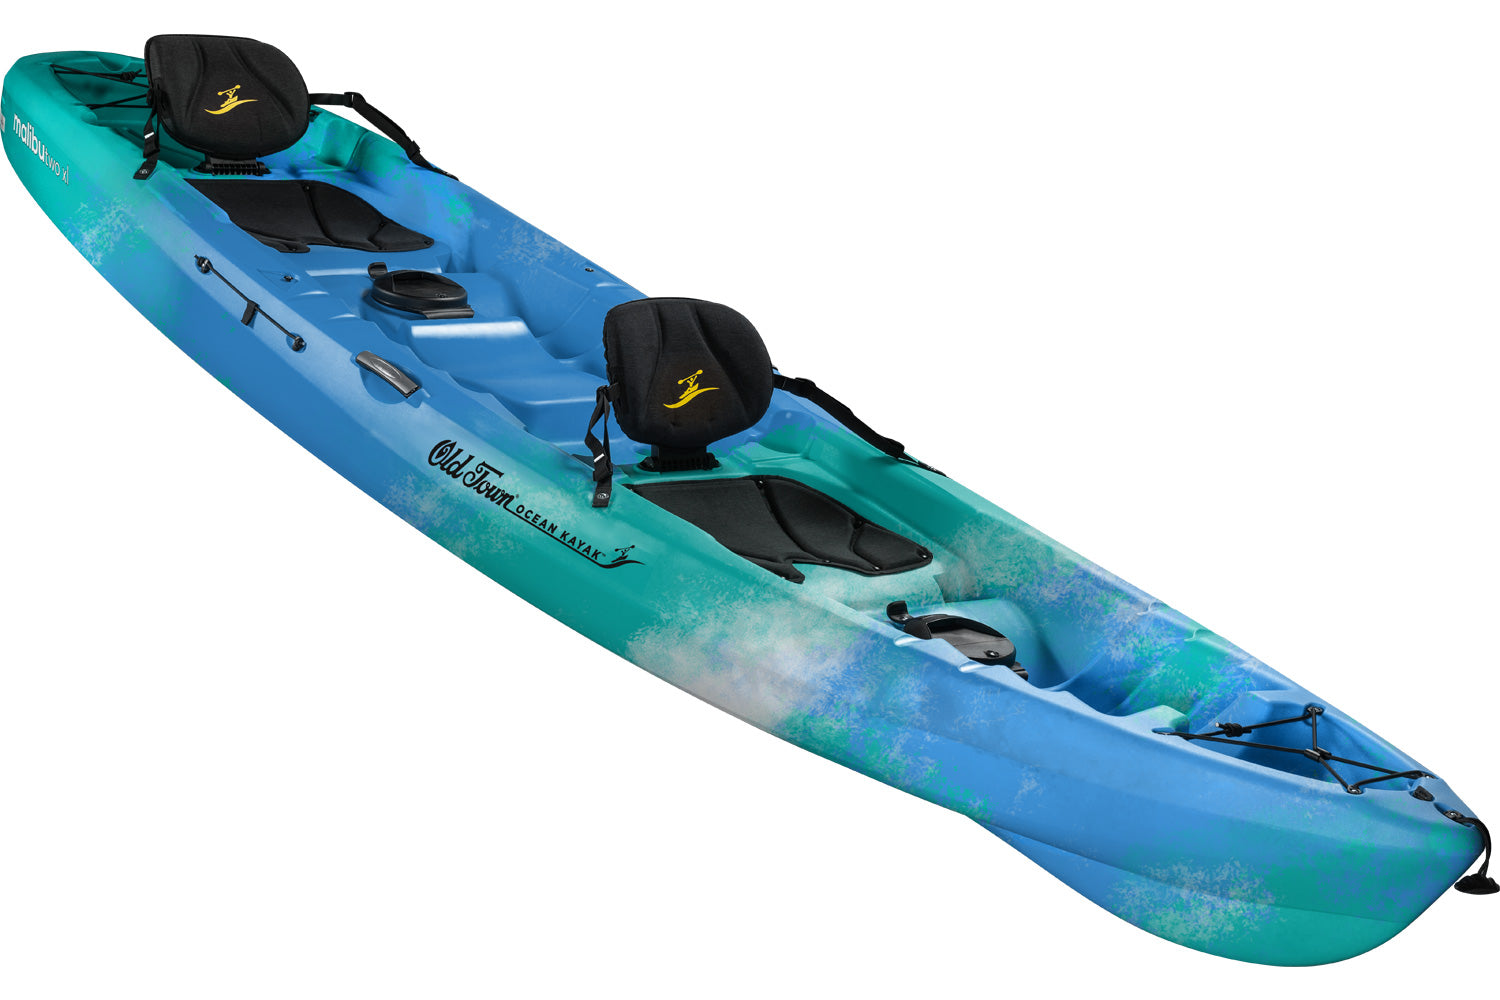 Ocean Kayak Malibu Two XL